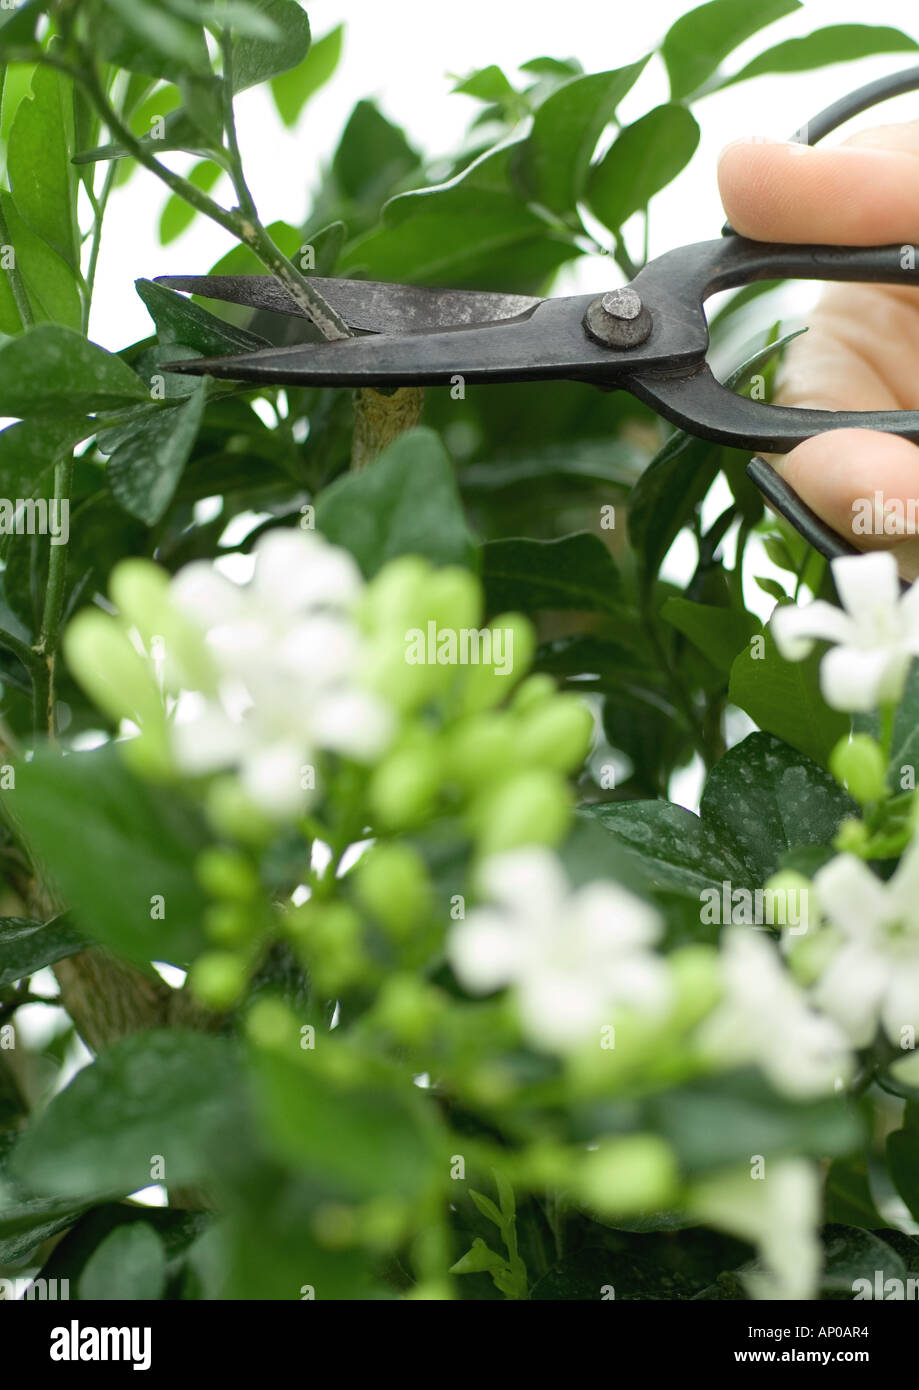 Hand, Jasmin Pflanze mit einer Schere beschneiden Stockfotografie - Alamy